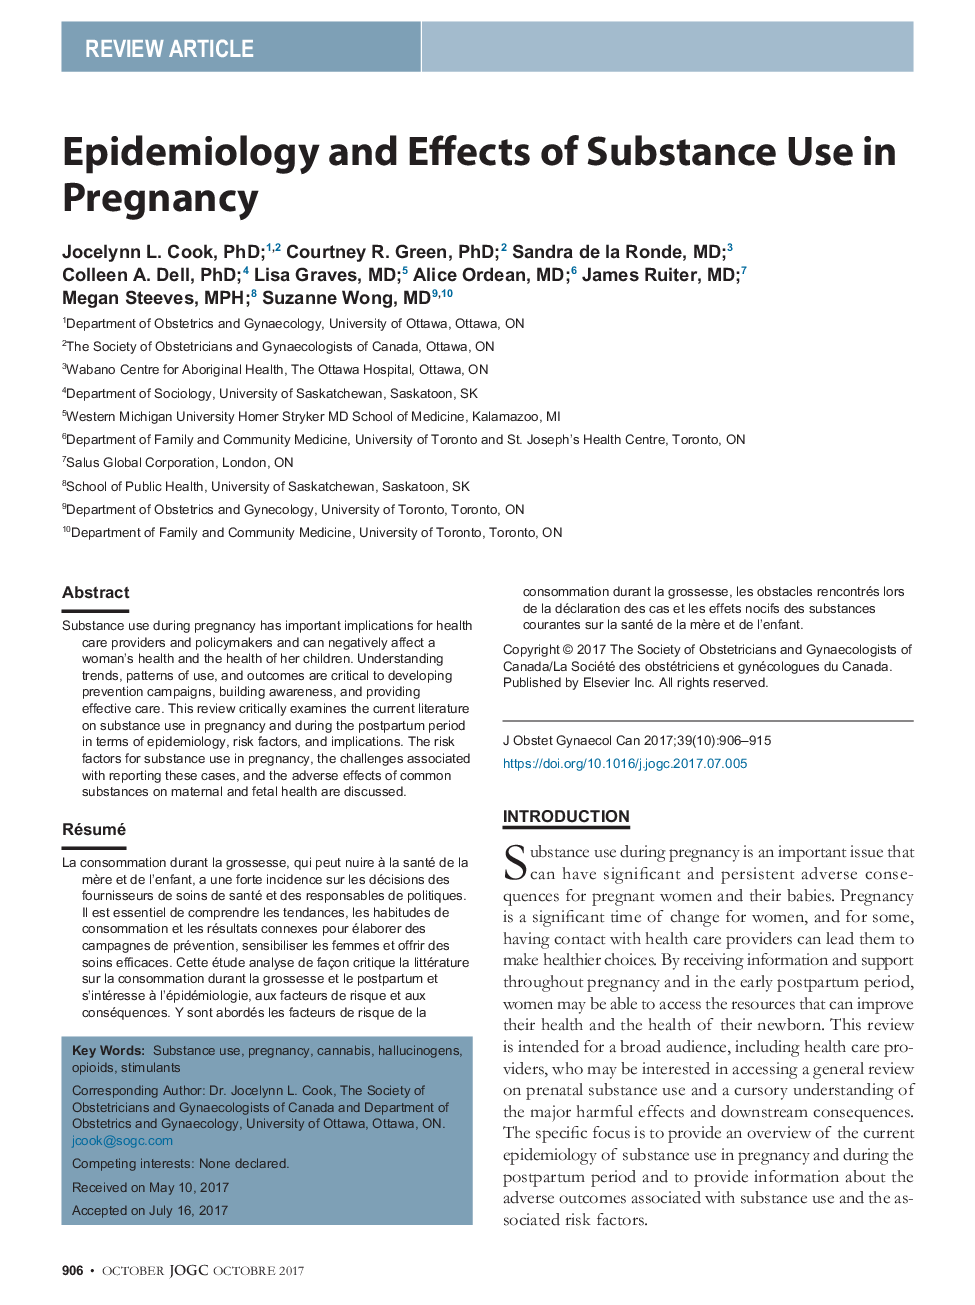 اپیدمیولوژی و اثرات مصرف مواد در حاملگی 